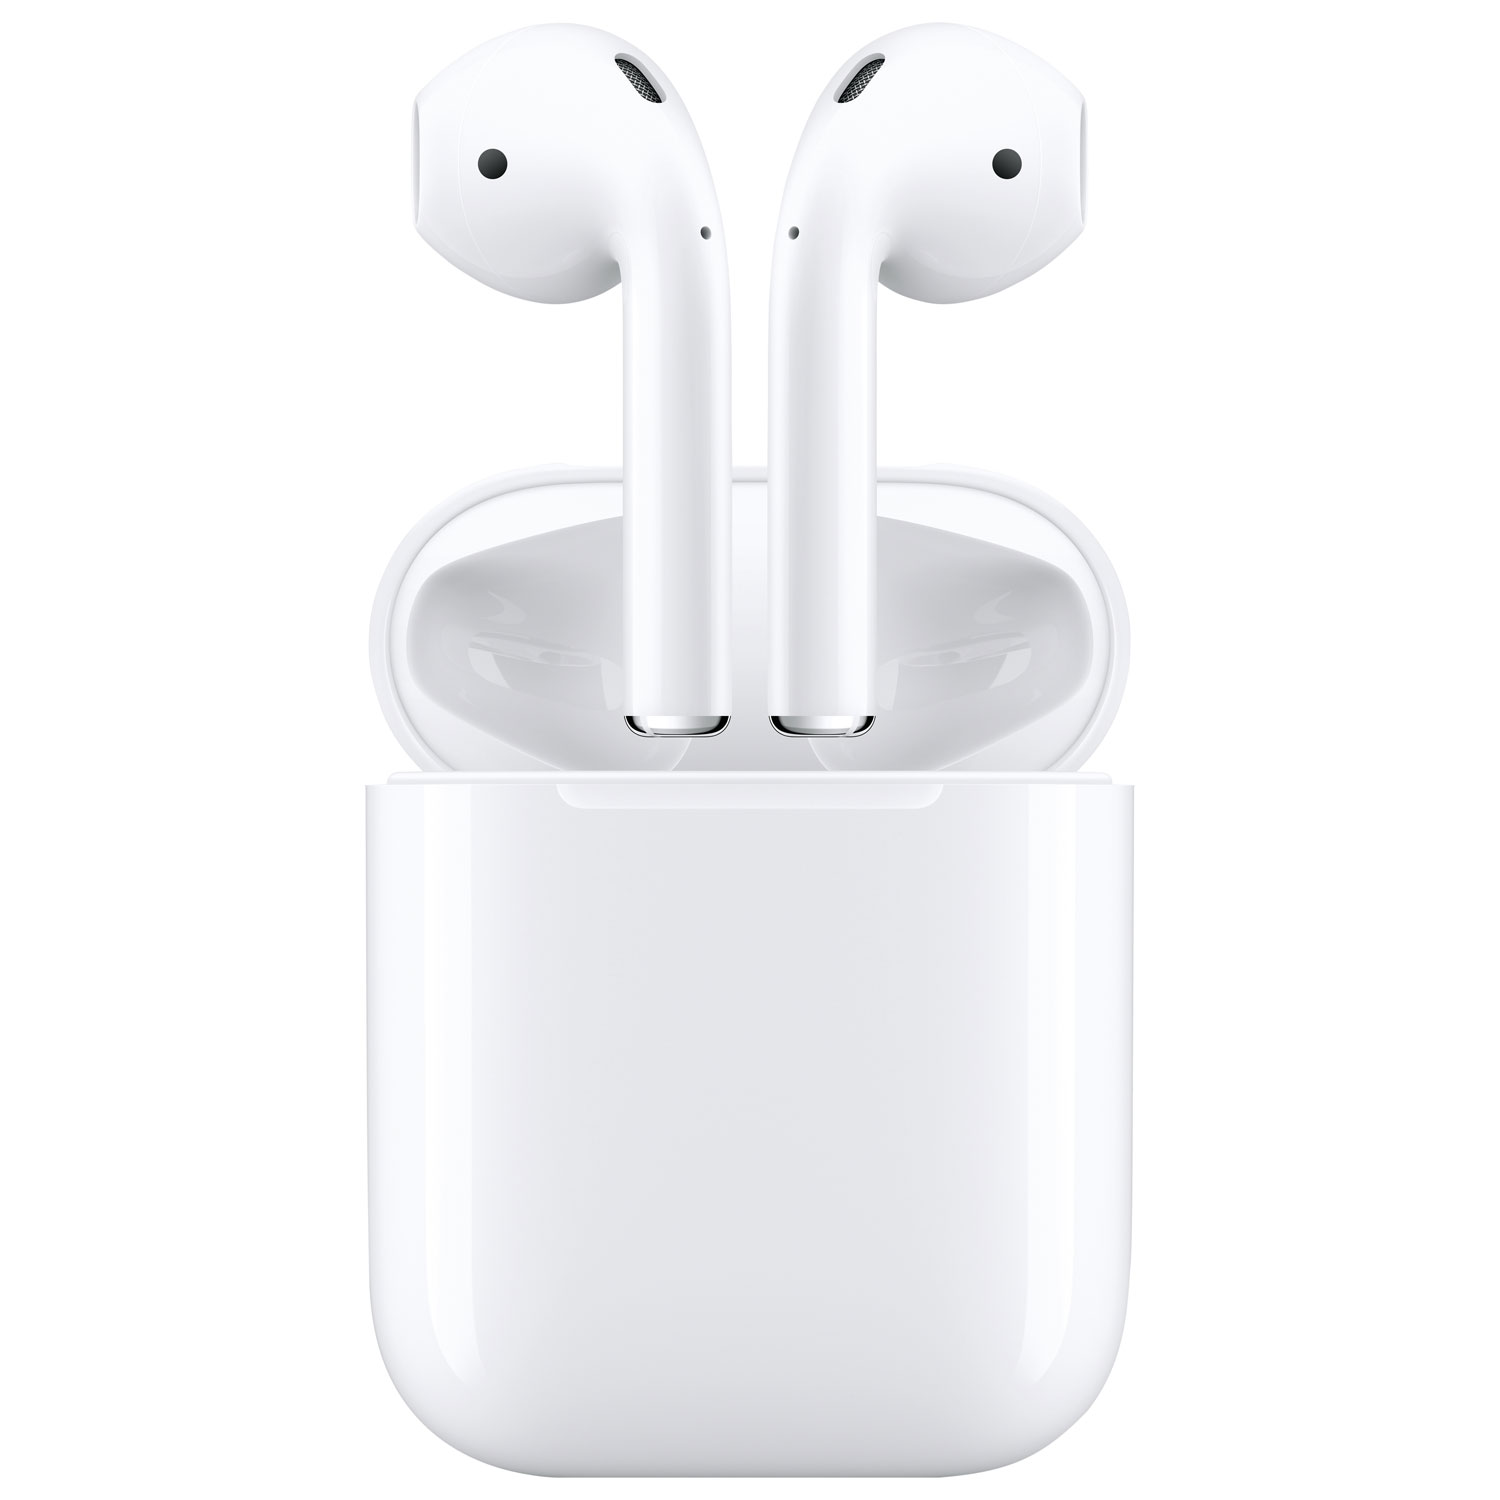 Apple AirPods (2nd generation) In-Ear True Wireless Earbuds - White